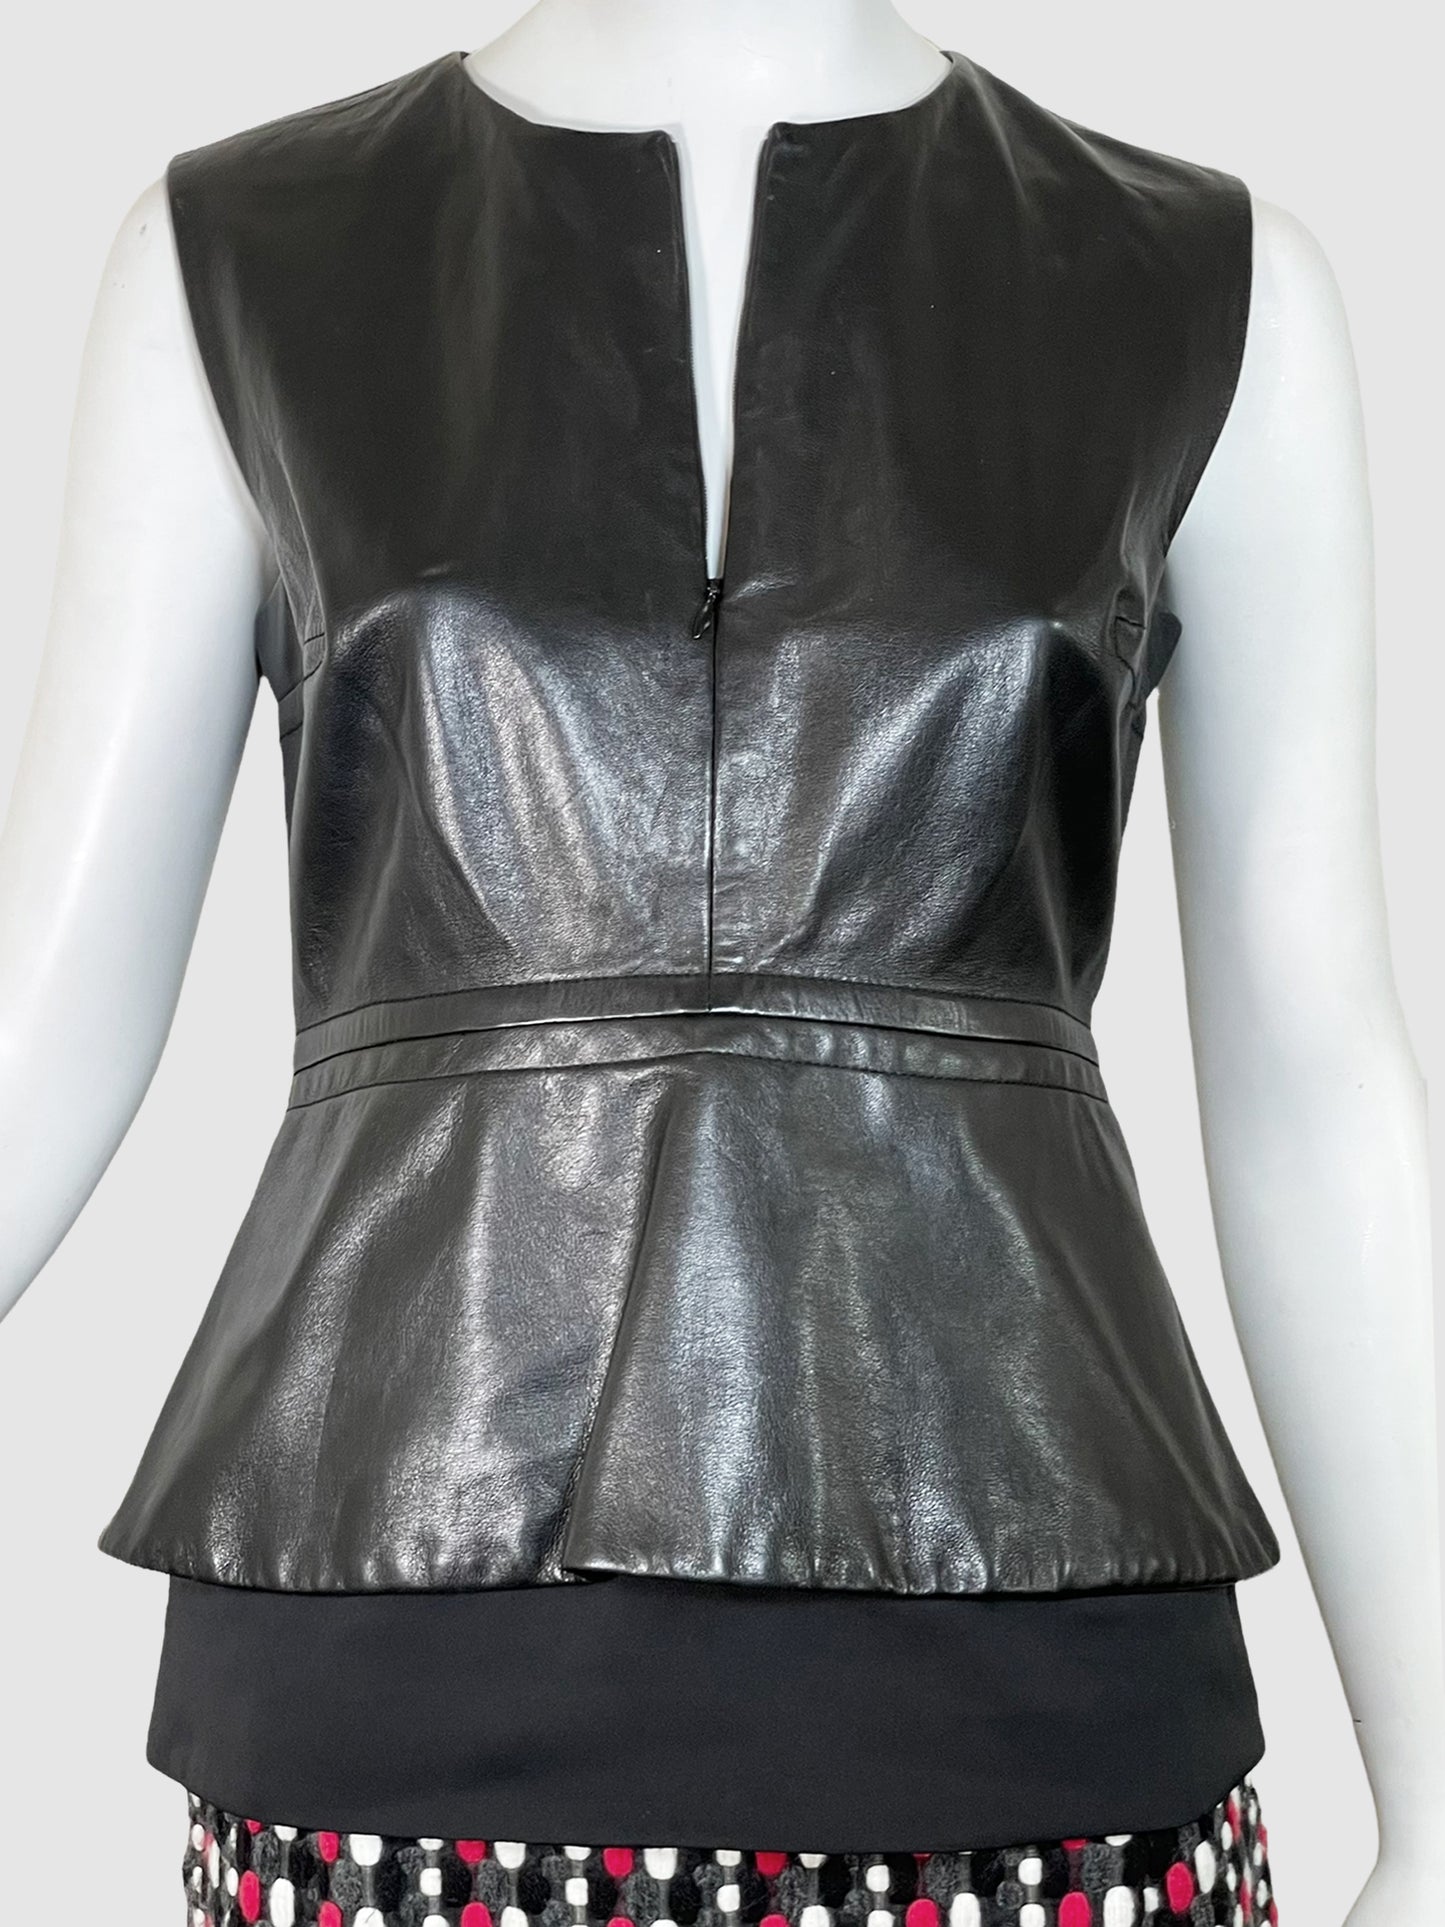 Diane von Furstenberg Sleeveless Leather Top with Zip - Size 6